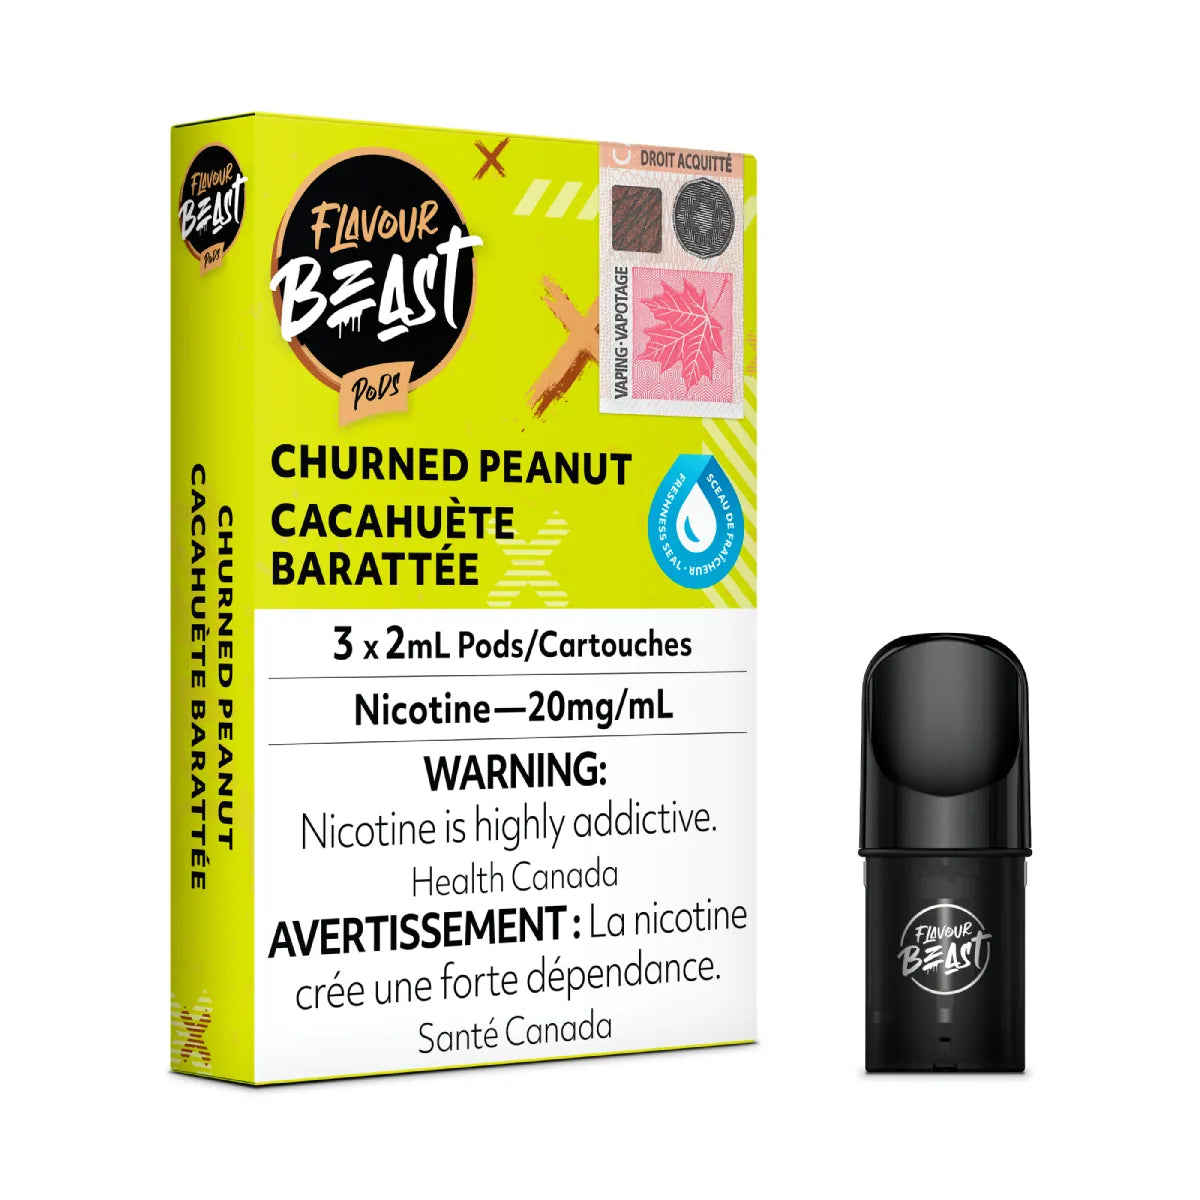 Churned Peanut - Flavour Beast Pod Pack - 20mg - EXCISED